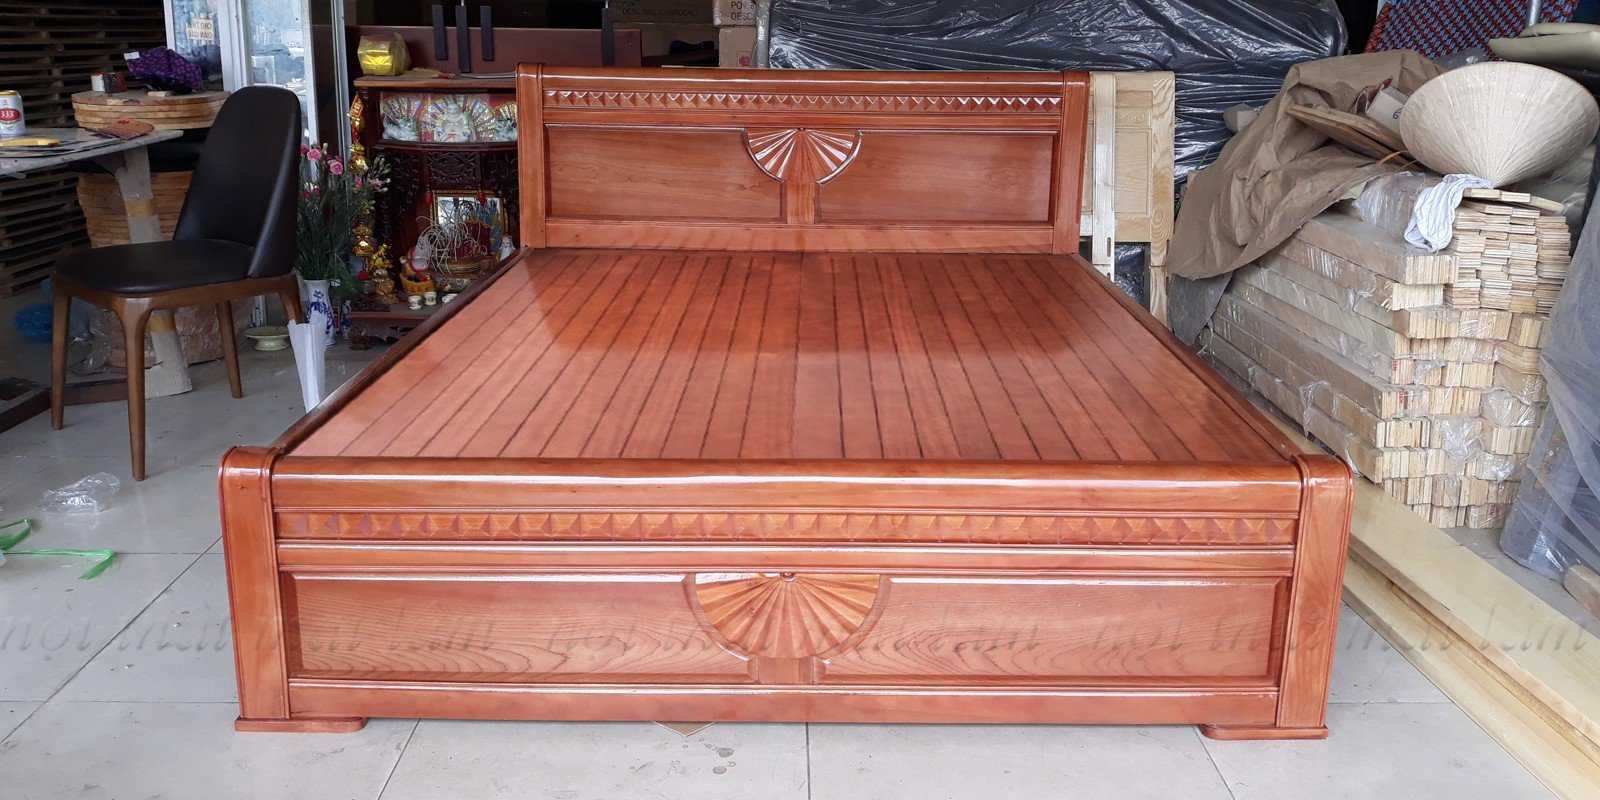 Giường ngủ gỗ xoan đào được thiết kế đa dạng kích thước phù hợp với nhiều đối tượng sử dụng 